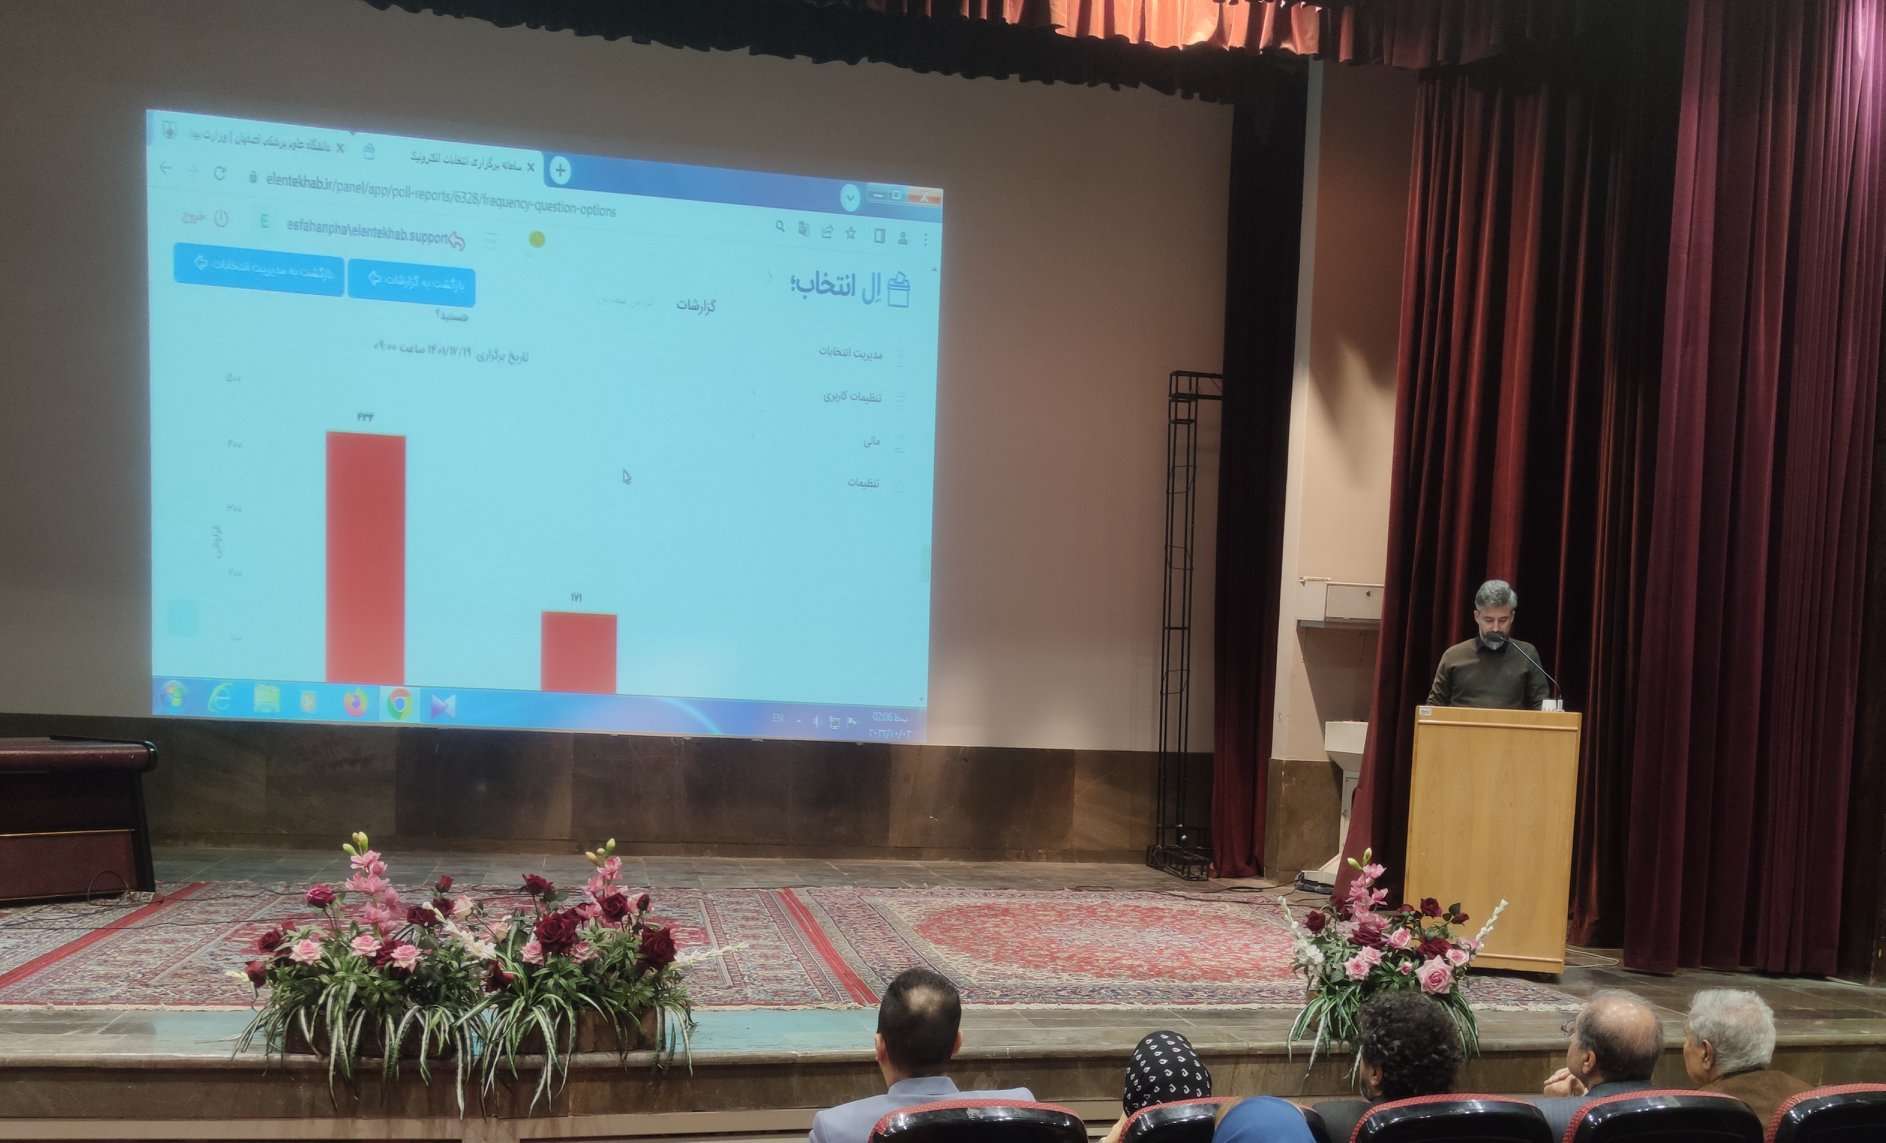 برگزاری انتخابات انجمن داروسازان ایران شعبه اصفهان در سامانه اِل انتخاب